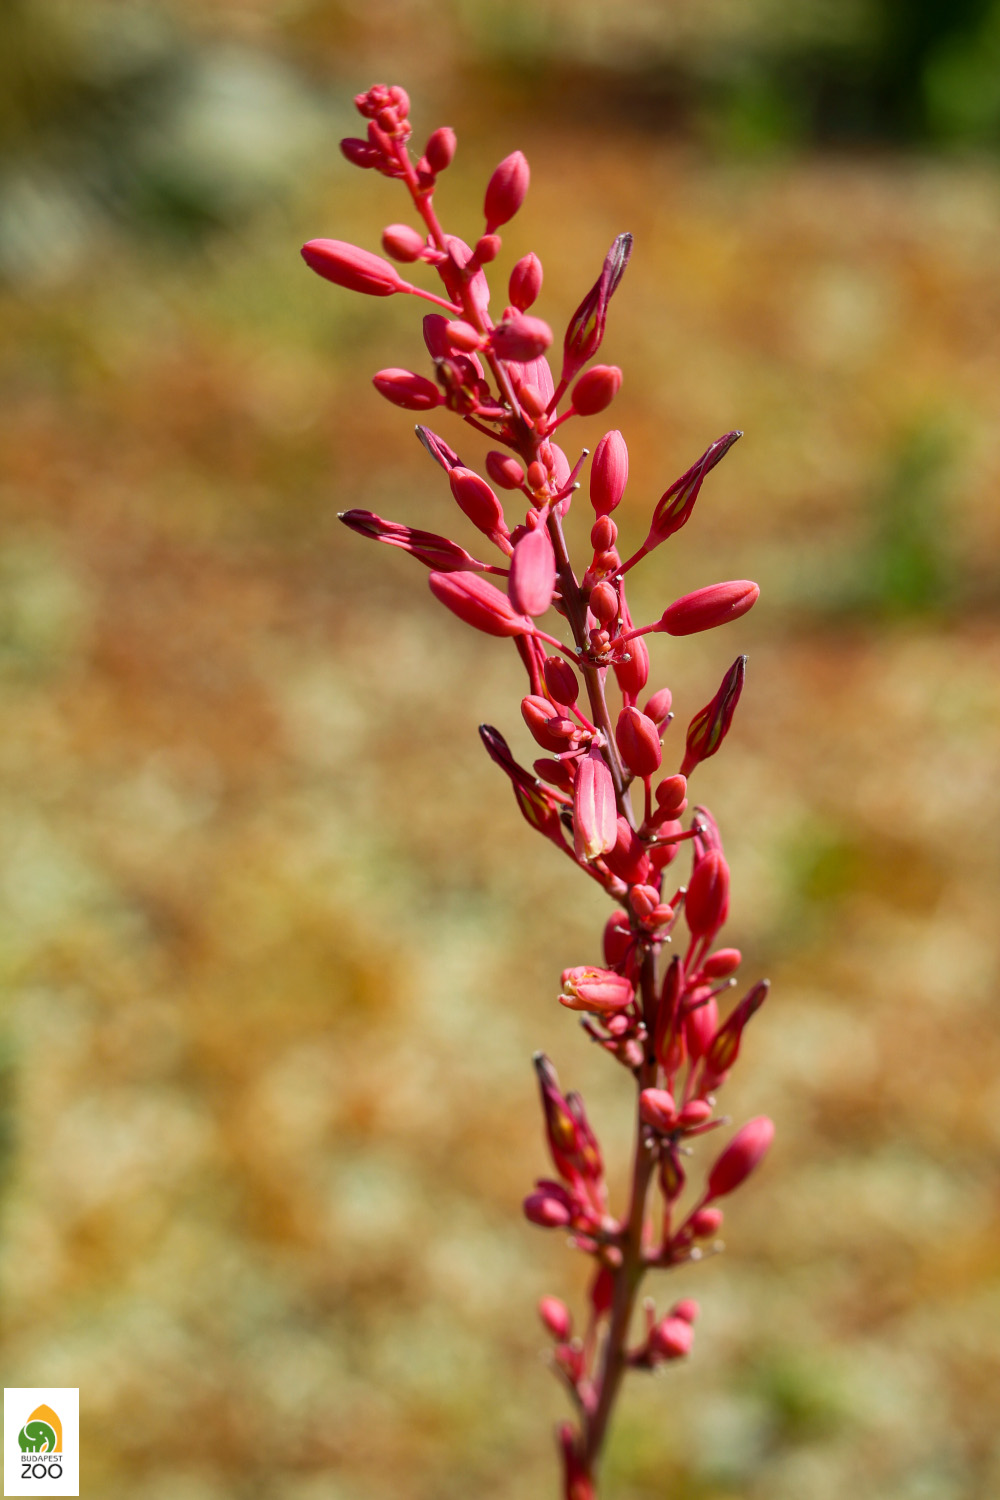 Magyarul vörösvirágú áljukkának (Hesperaloe parviflora) hívják ezt a növényt, amely az igazi jukkához, vagyis a pálmaliliomhoz hasonlóan szintén az agávék rokonsági körébe tartozik